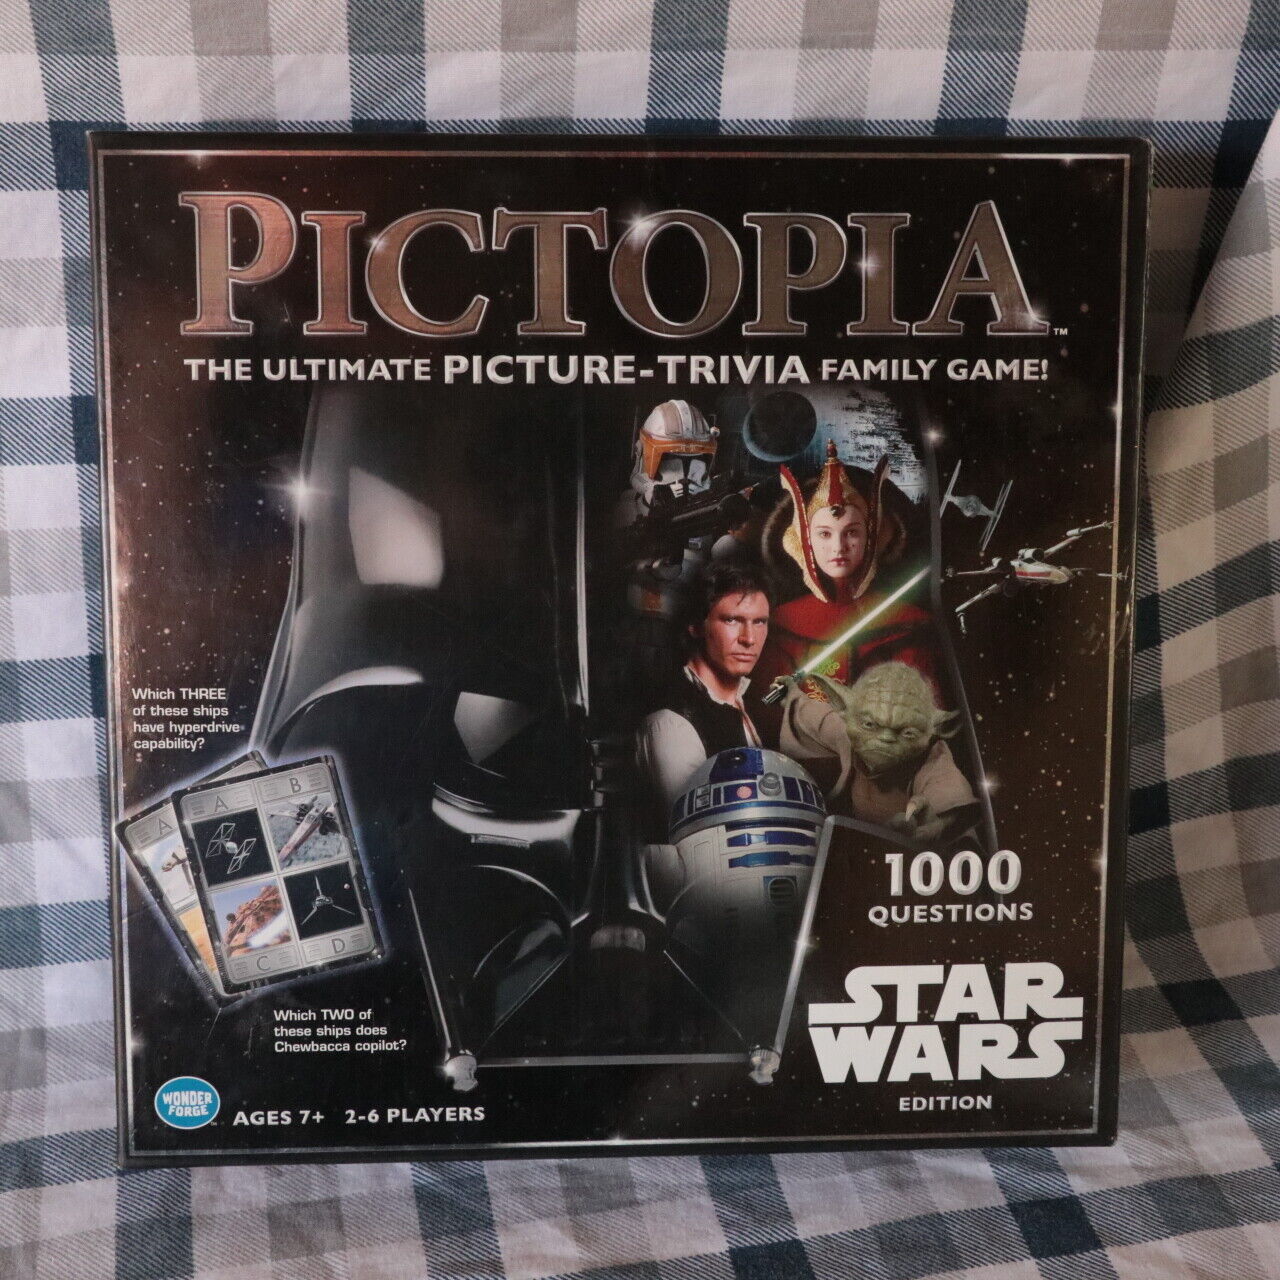 StarWars Pictopia family Trivia game Jedi Grogu Mandalorian Yoda Vader Rebels